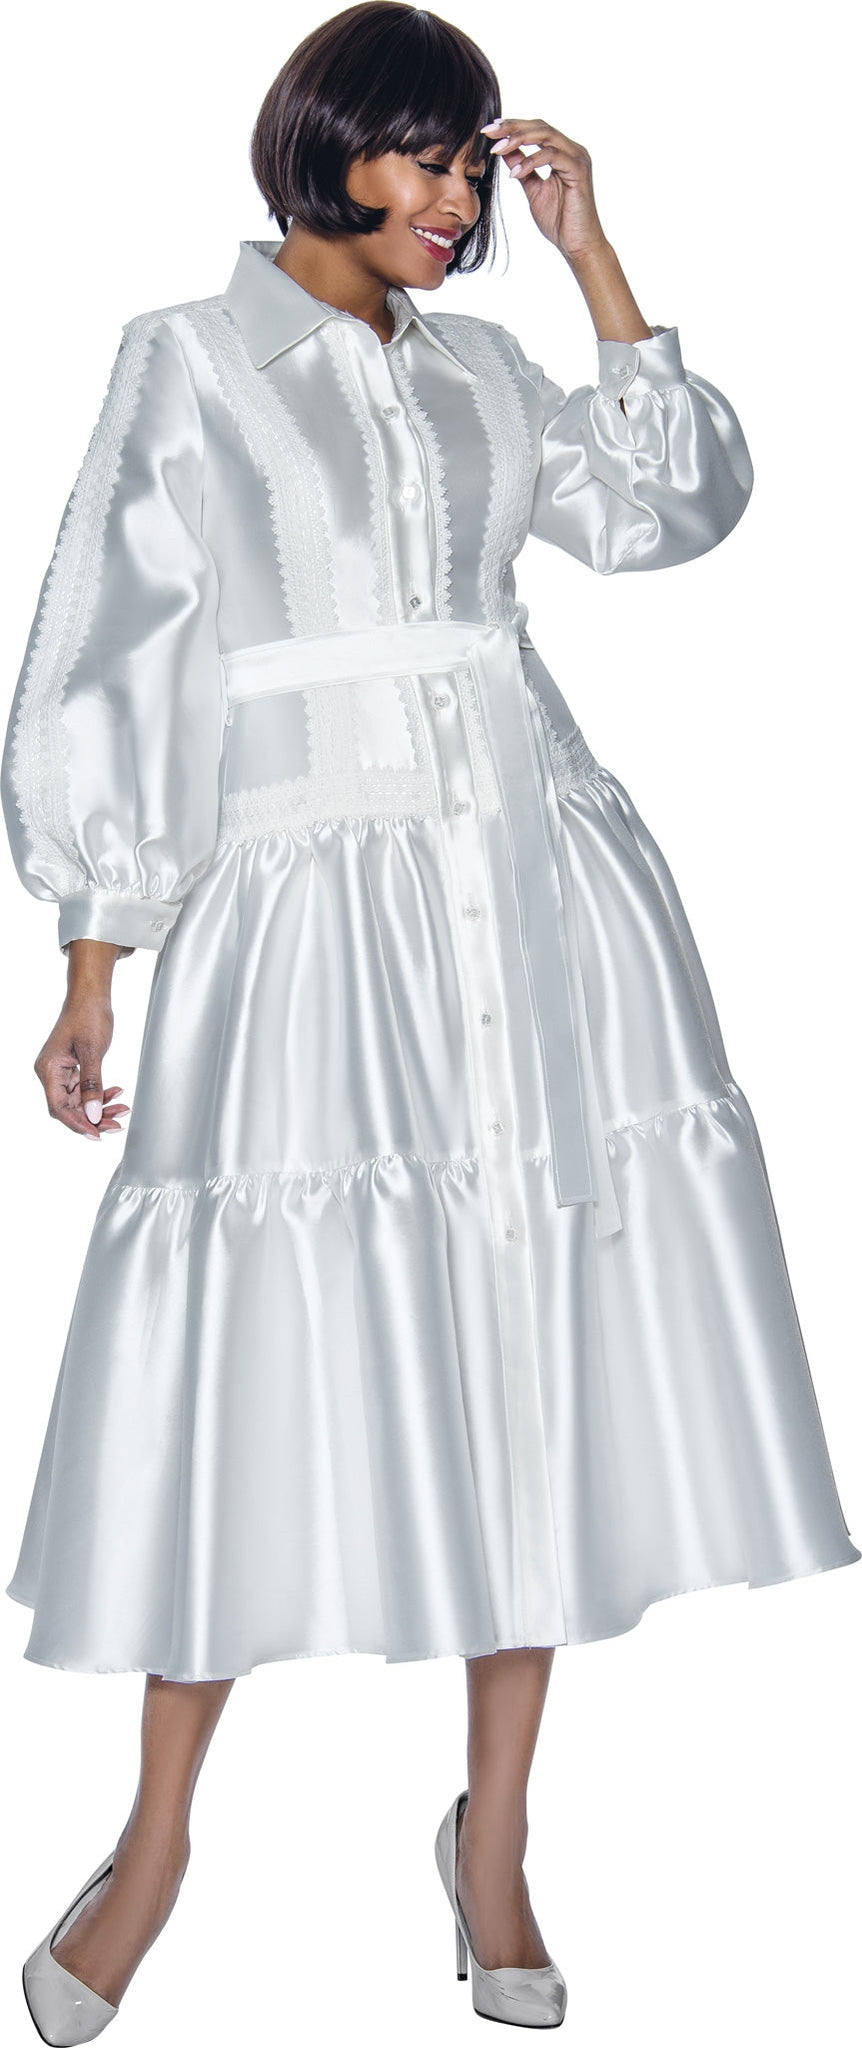 Terramina Church Dress 7029C-White - Church Suits For Less